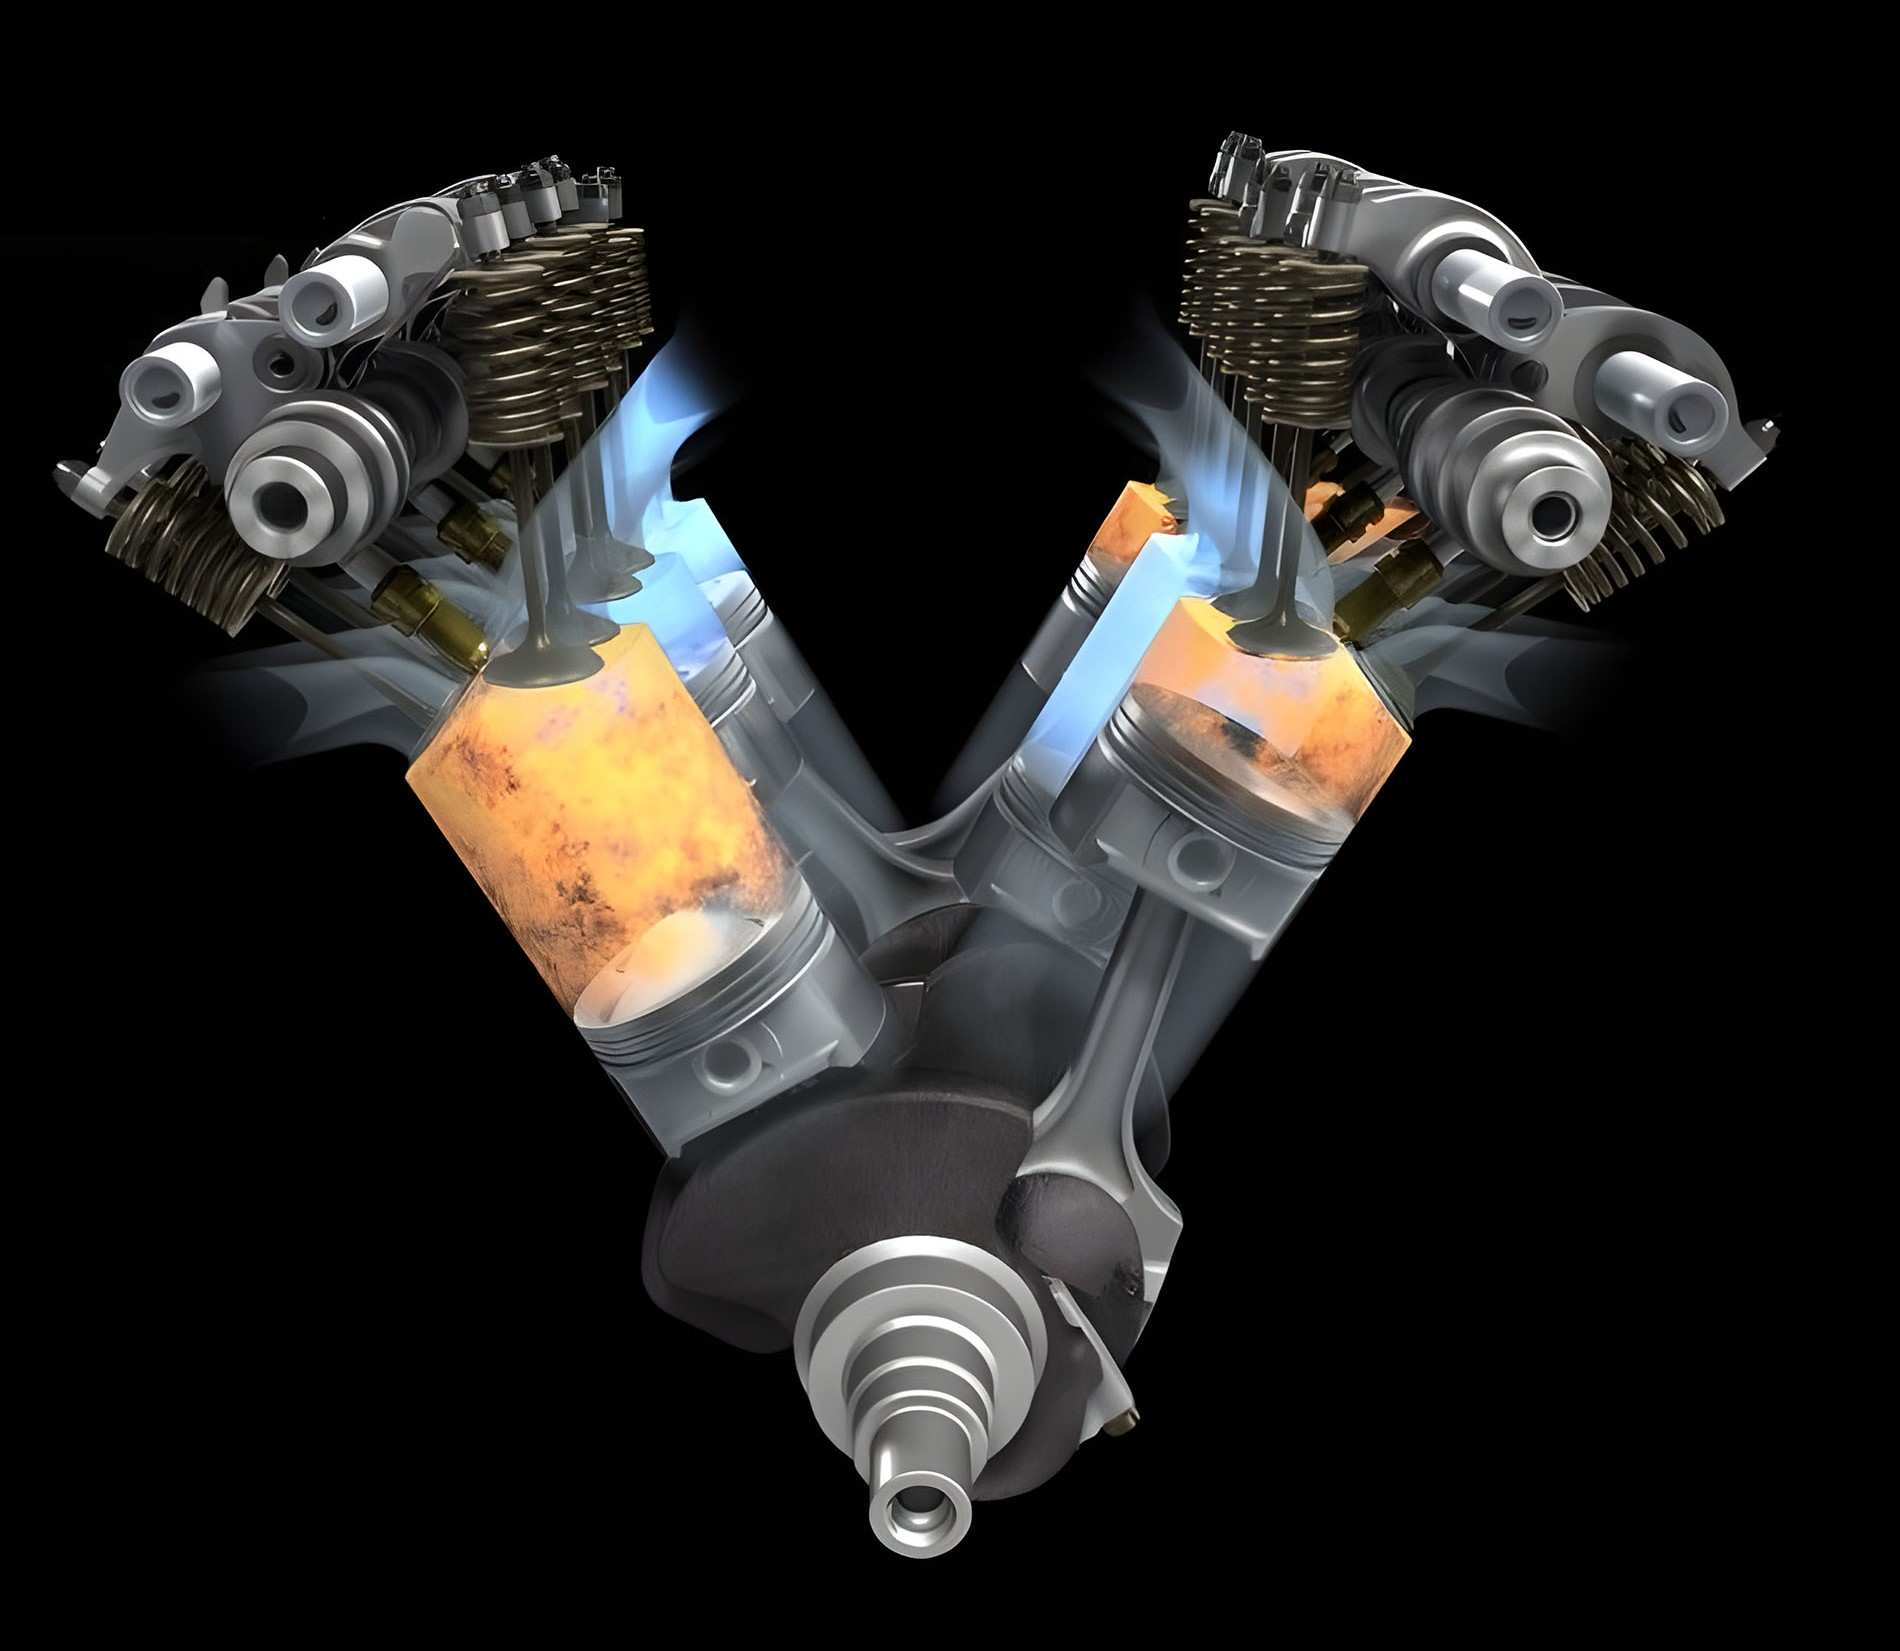 Do các bộ phận trong động cơ đều là hợp kim kim loại cho nên khi hoạt động ở nhiệt độ cao có thể giãn nở quá phạm vi cho phép làm cho các bộ phận bị biến dạng